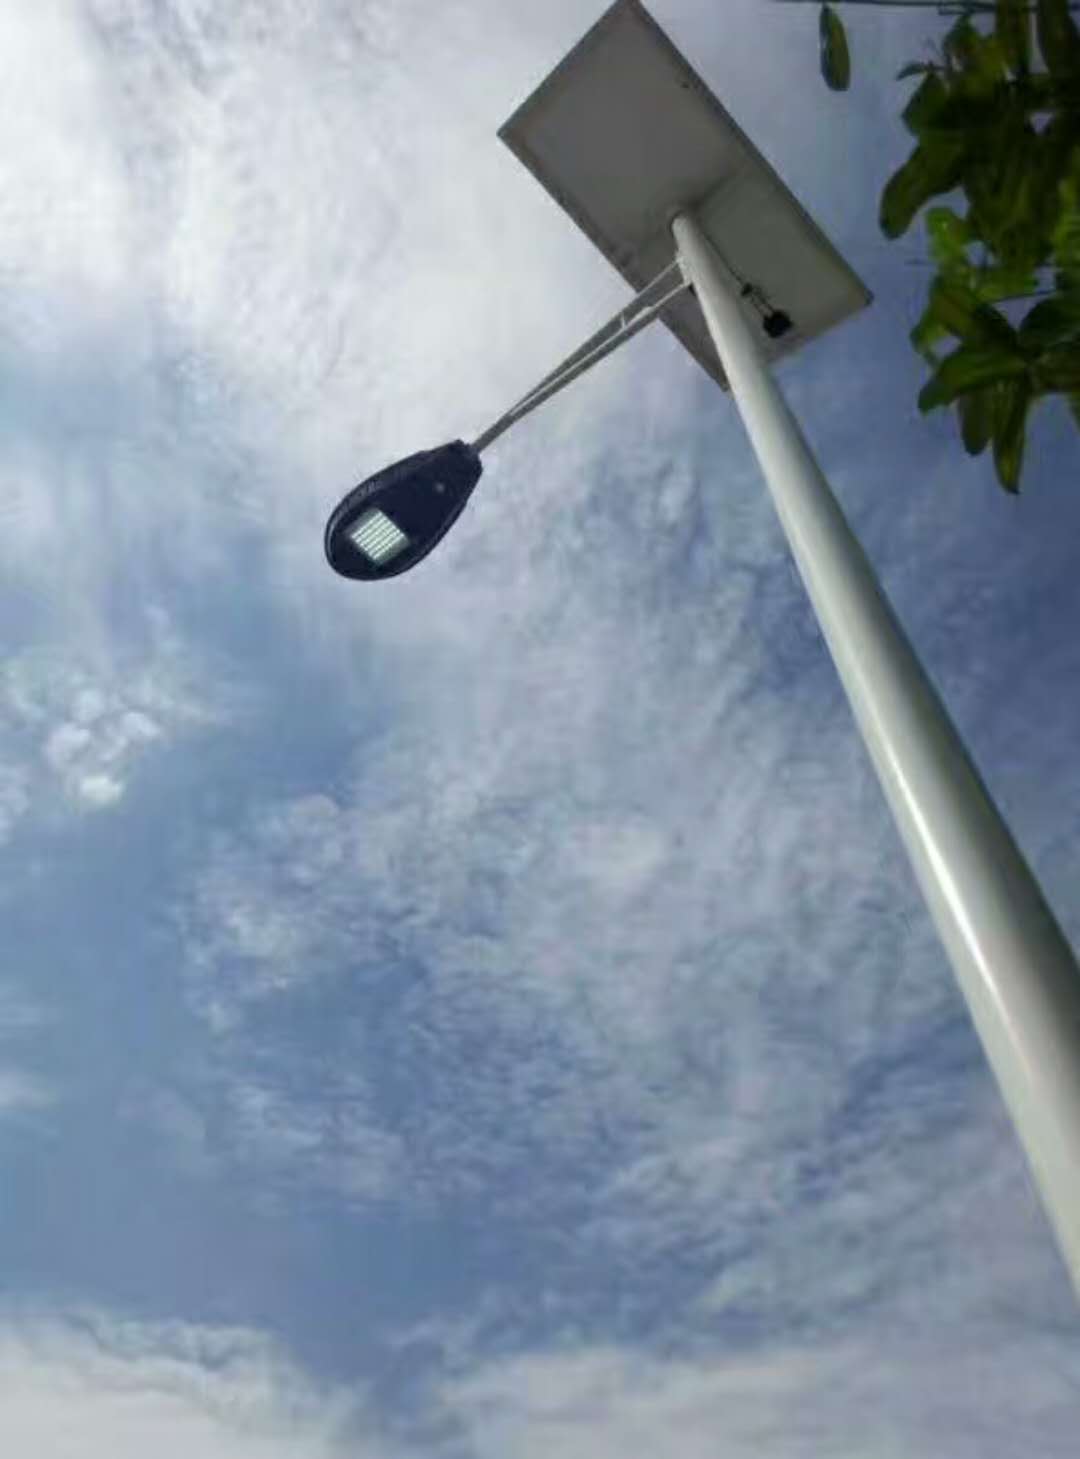 河南省南陽市88套農村太陽能路燈工程完工啦!